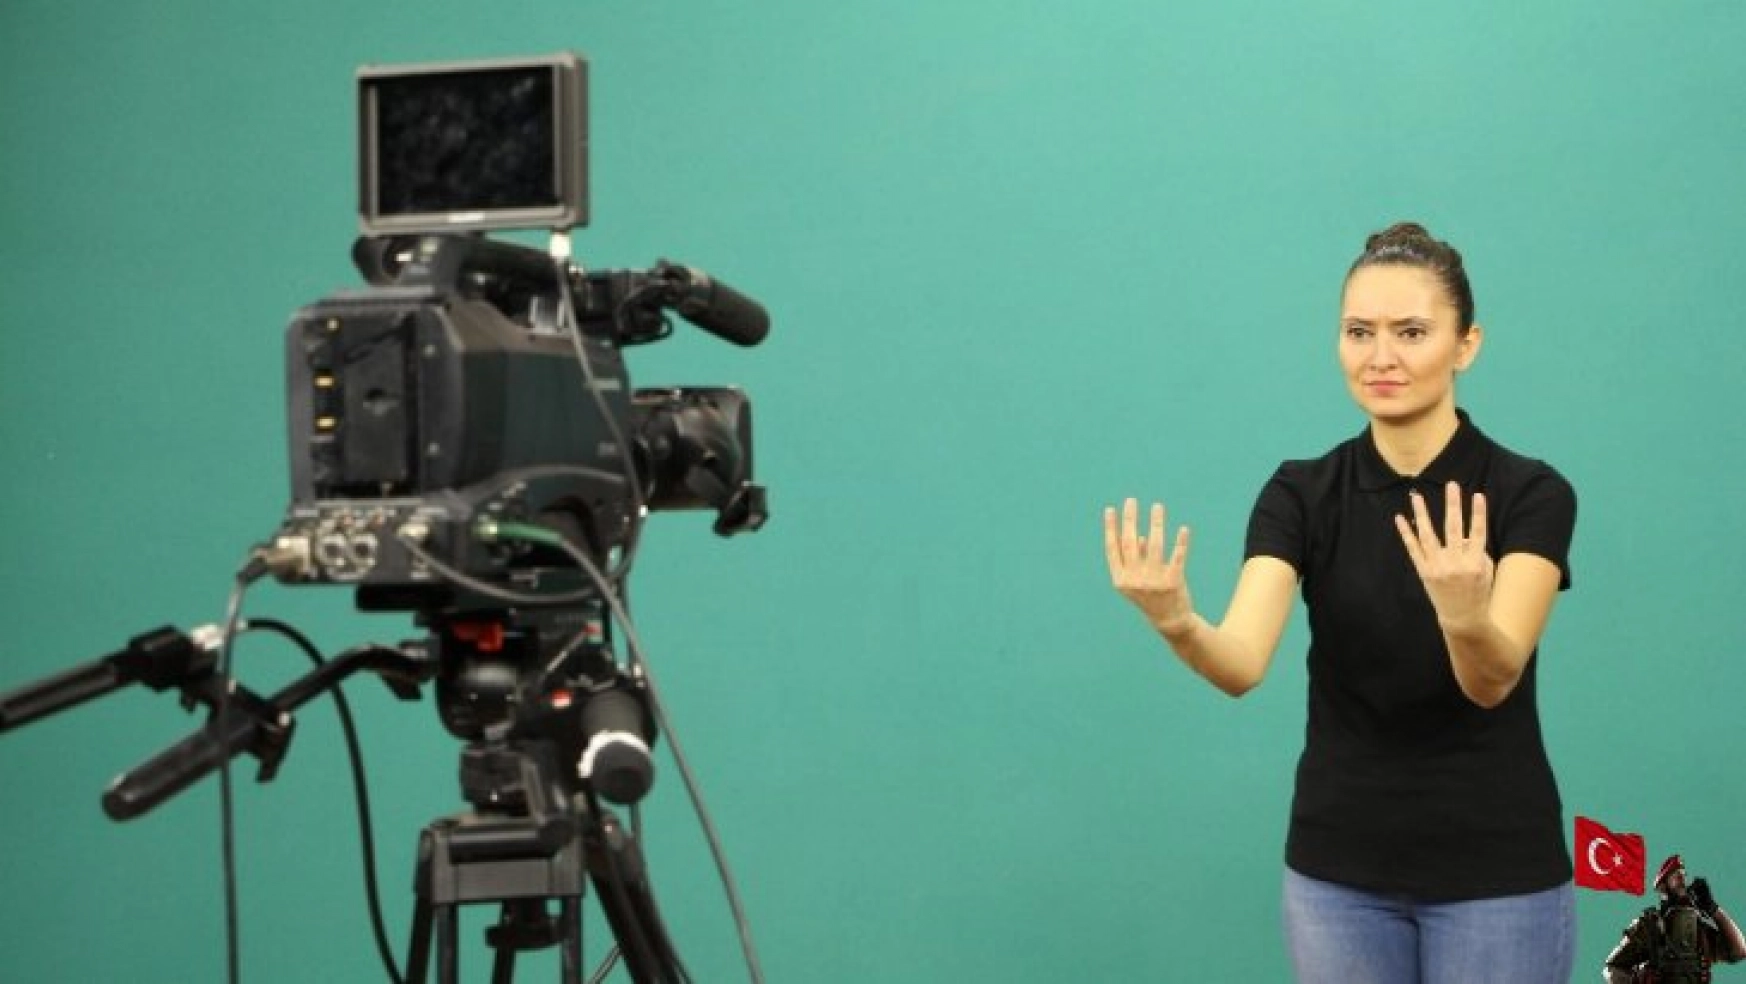 İşitme engelliler 'Türk İşaret Dili Kitabı' için kamera karşısına geçti